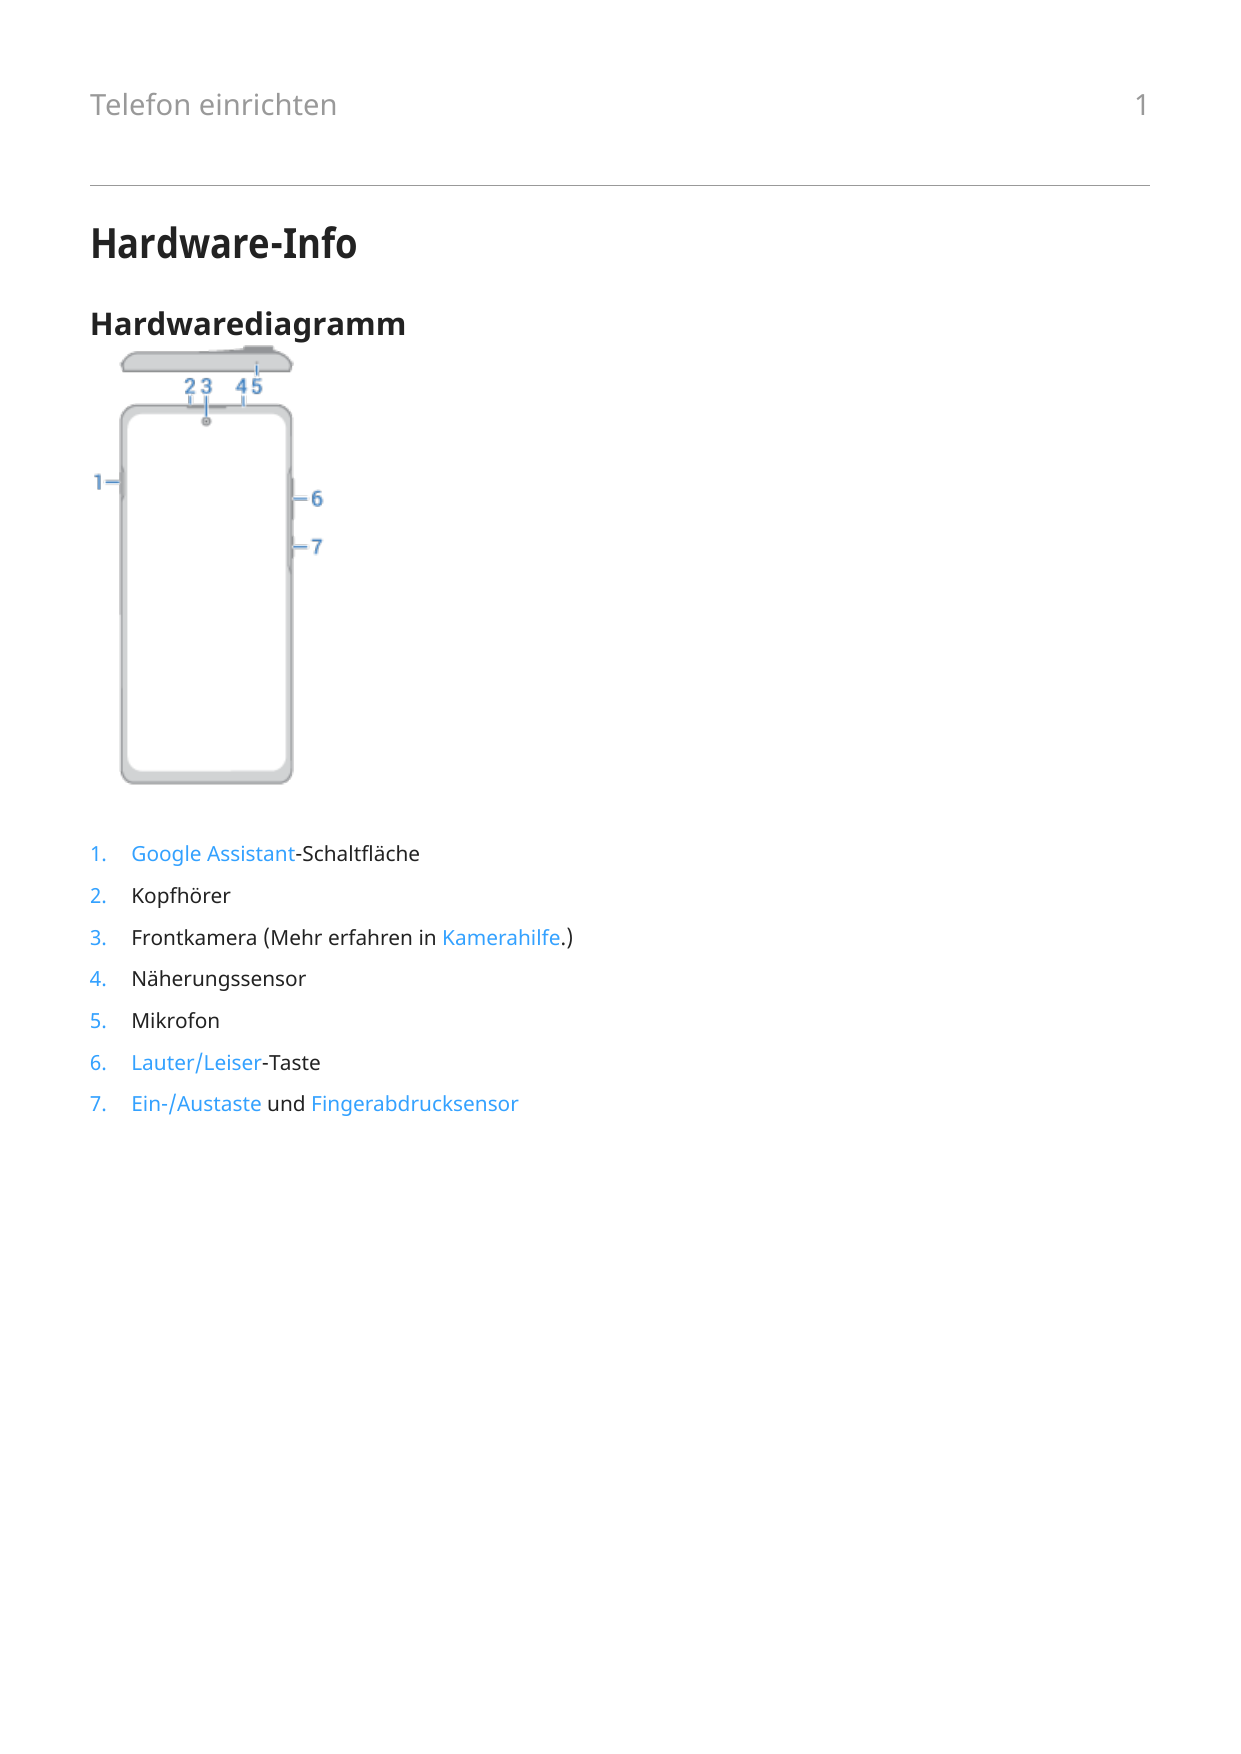 Telefon einrichtenHardware-InfoHardwarediagramm1.Google Assistant-Schaltfläche2.Kopfhörer3.Frontkamera (Mehr erfahren in Kamerah